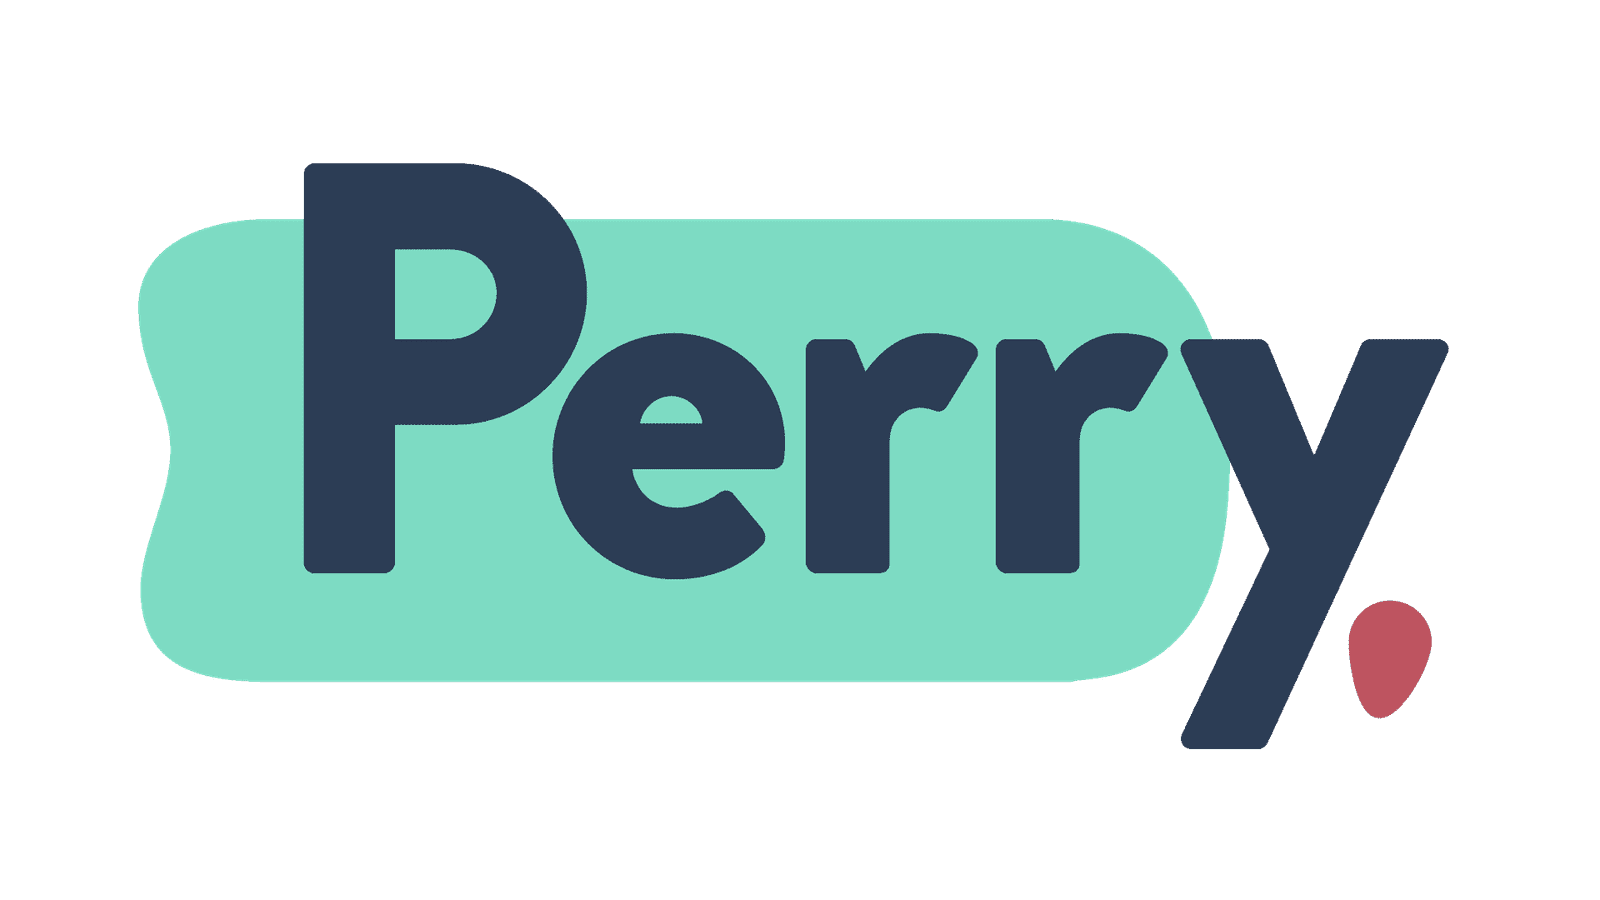 Dor Perry